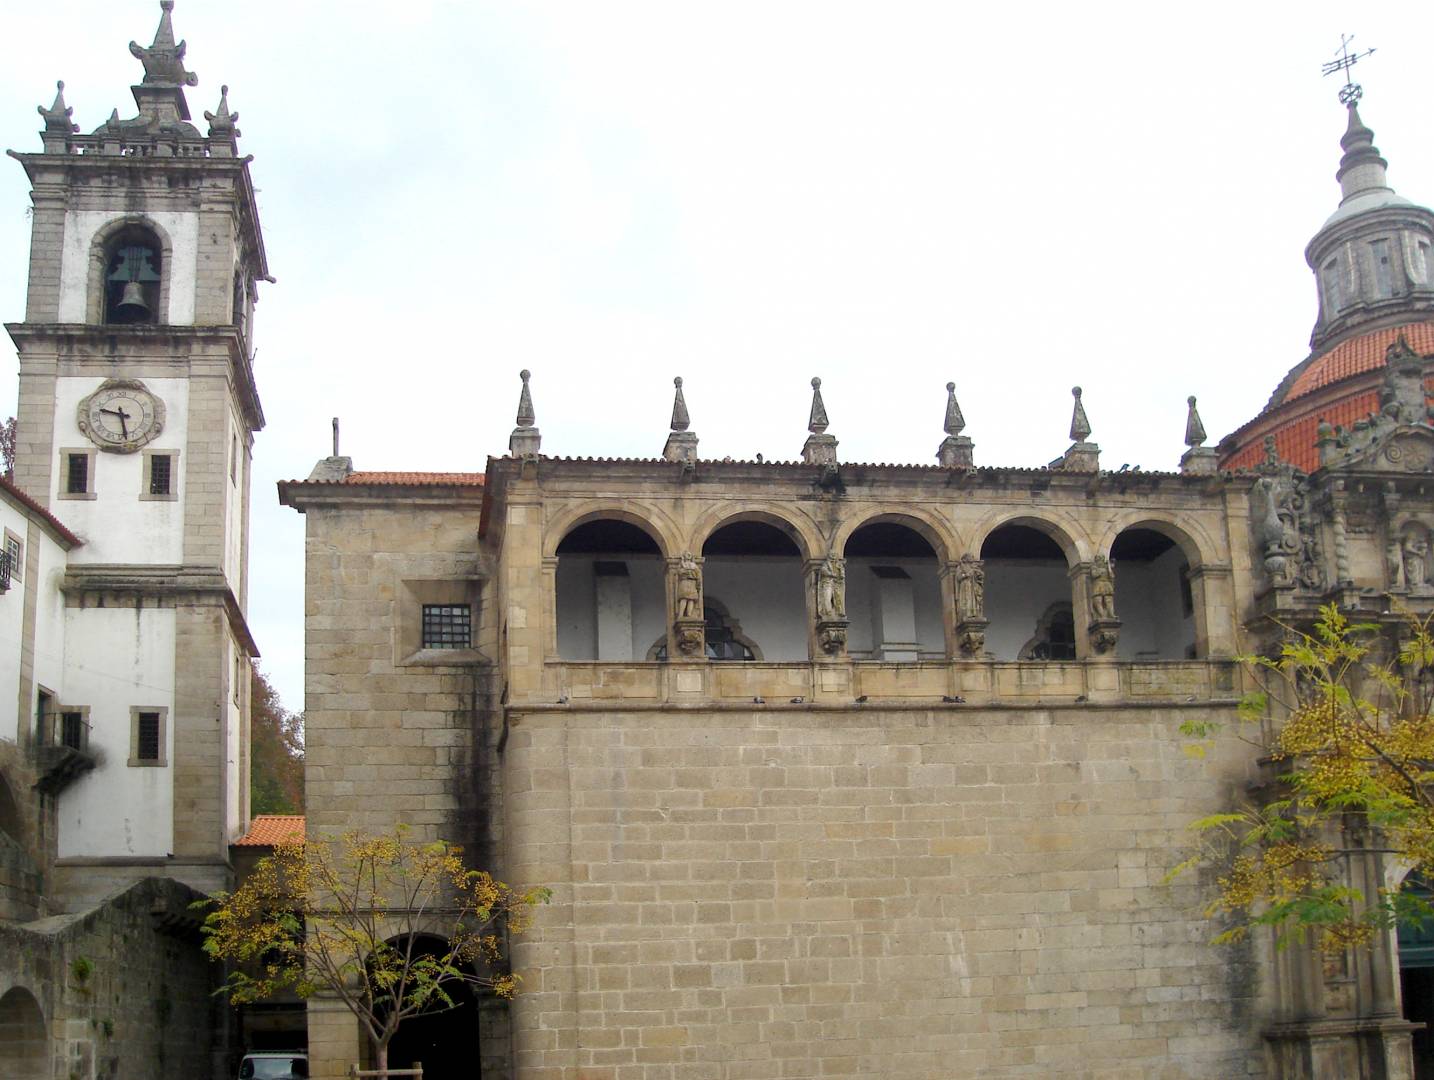 Convento, Igreja de São Gonçalo e Claustro